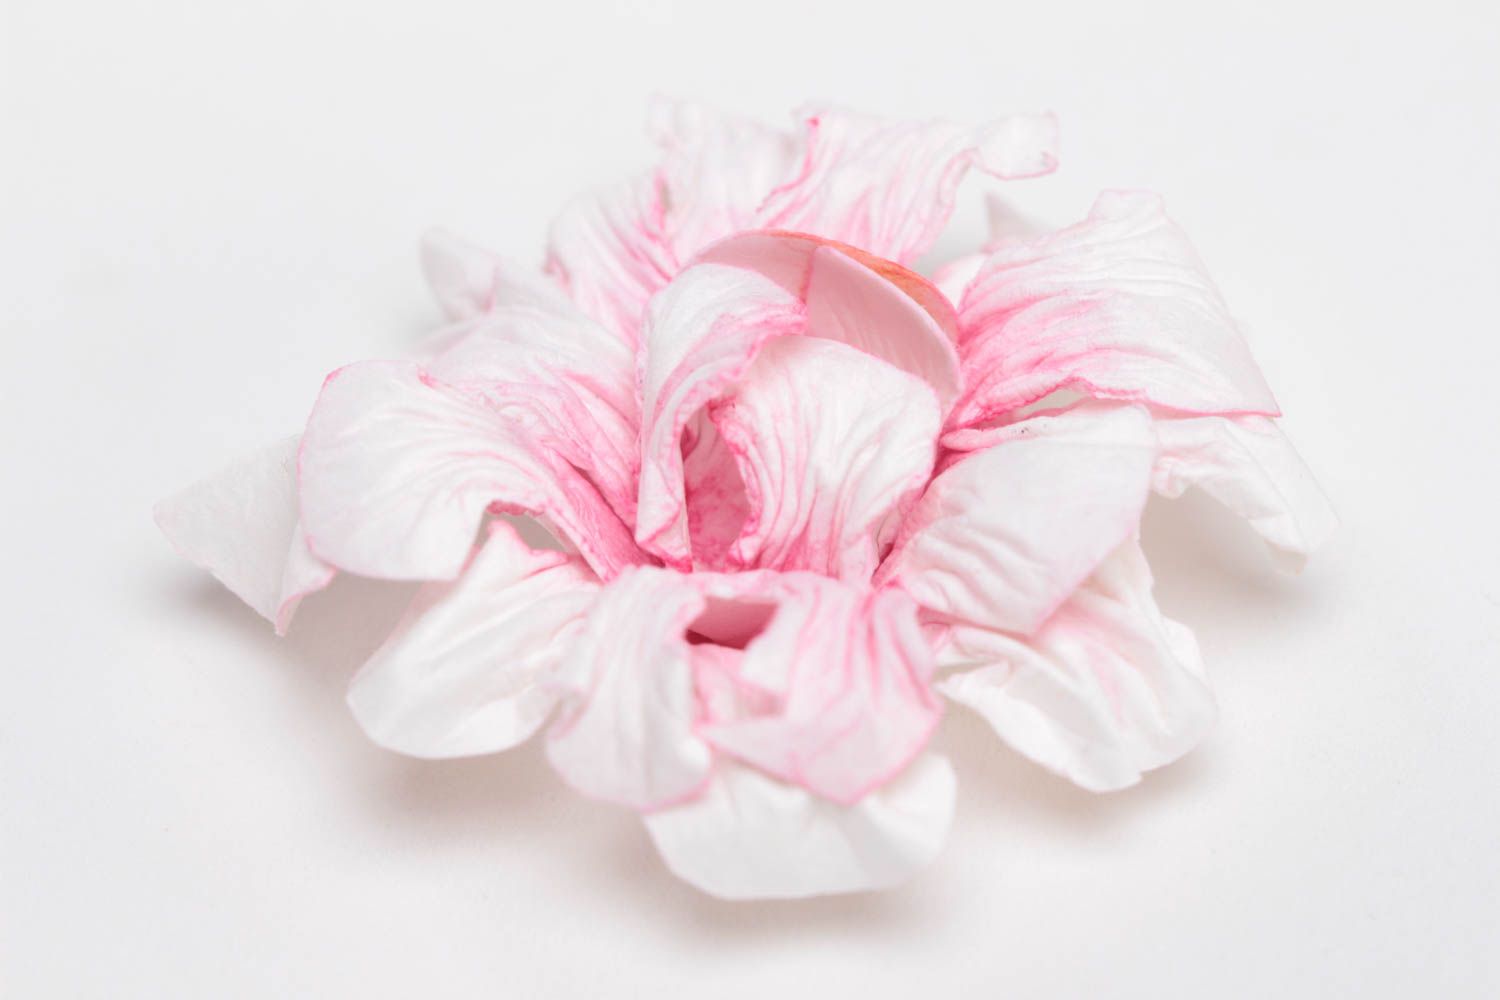 Нежный цветок из бумаги для создания изделий в технике скрапбукинг хэнд мэйд фото 2